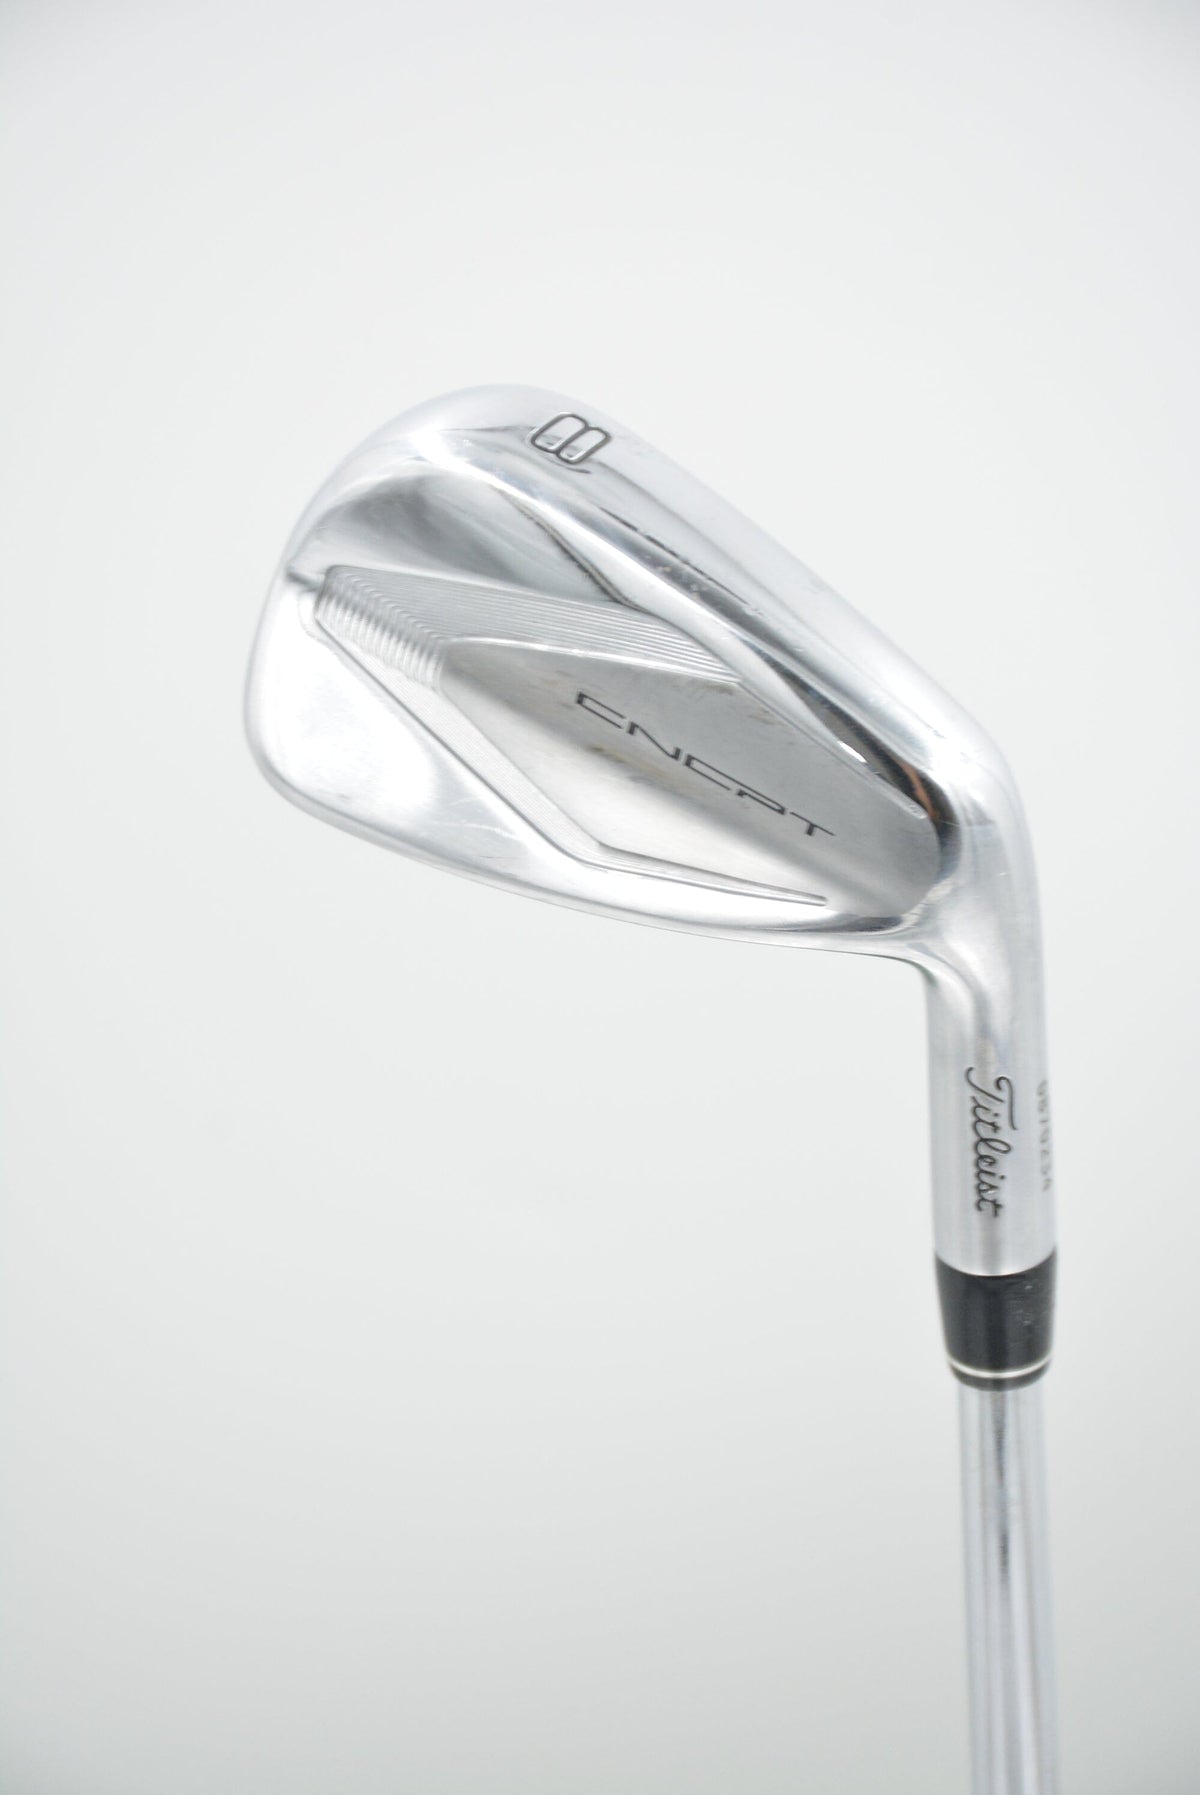 Titleist Cncpt Cp-02 4-9 Iron Set S Flex +0.5" Golf Clubs GolfRoots 